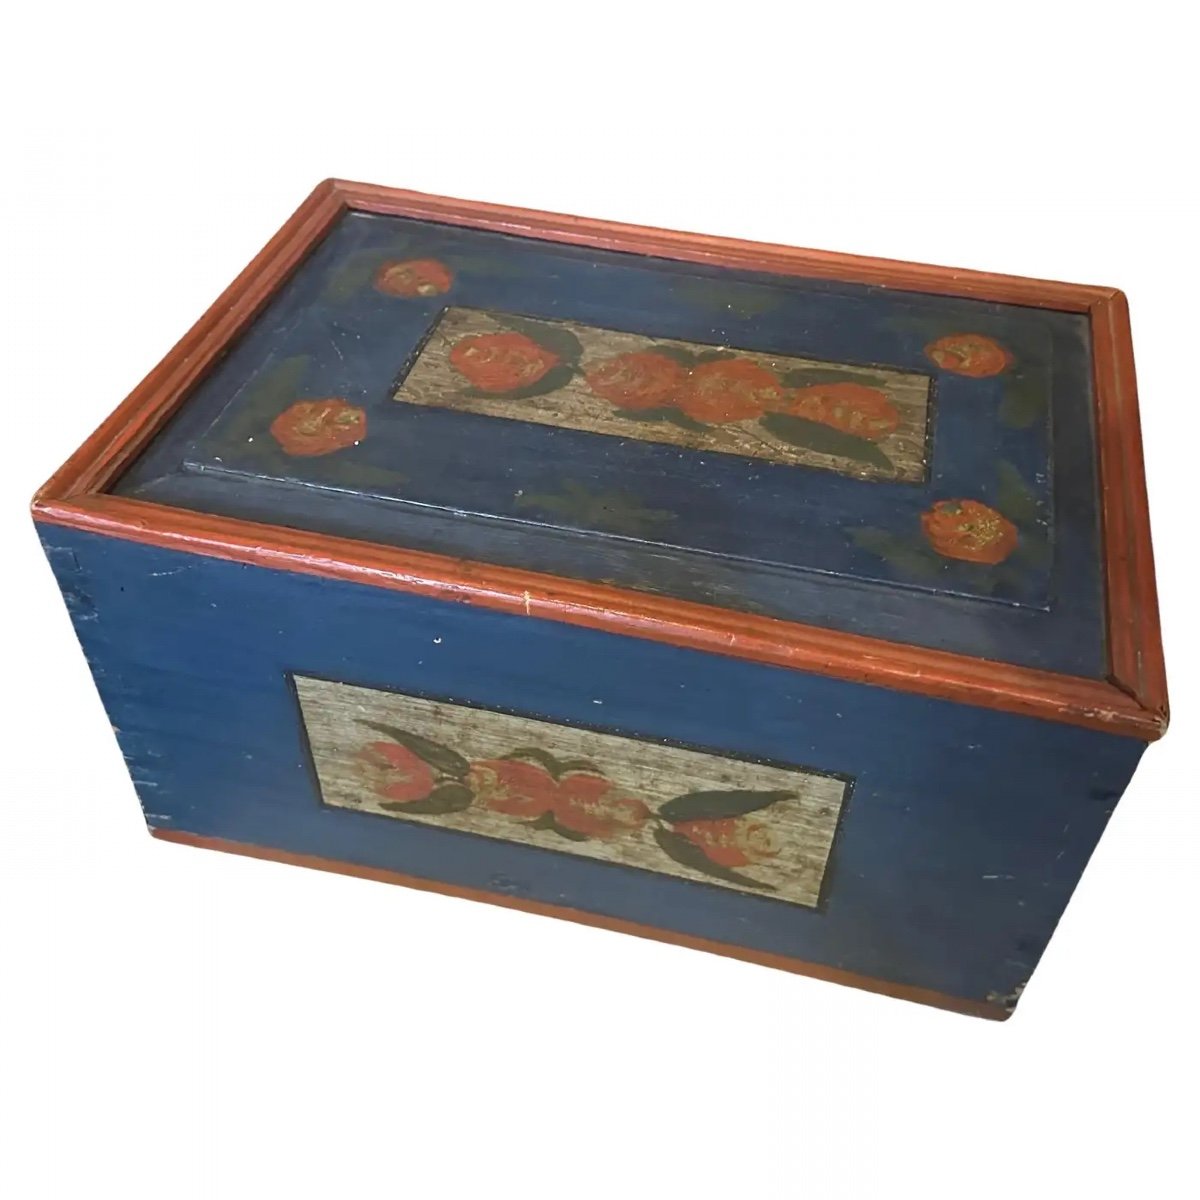 Scatola siciliana stile Louis Philippe del 1890 in legno laccato rosso e blu